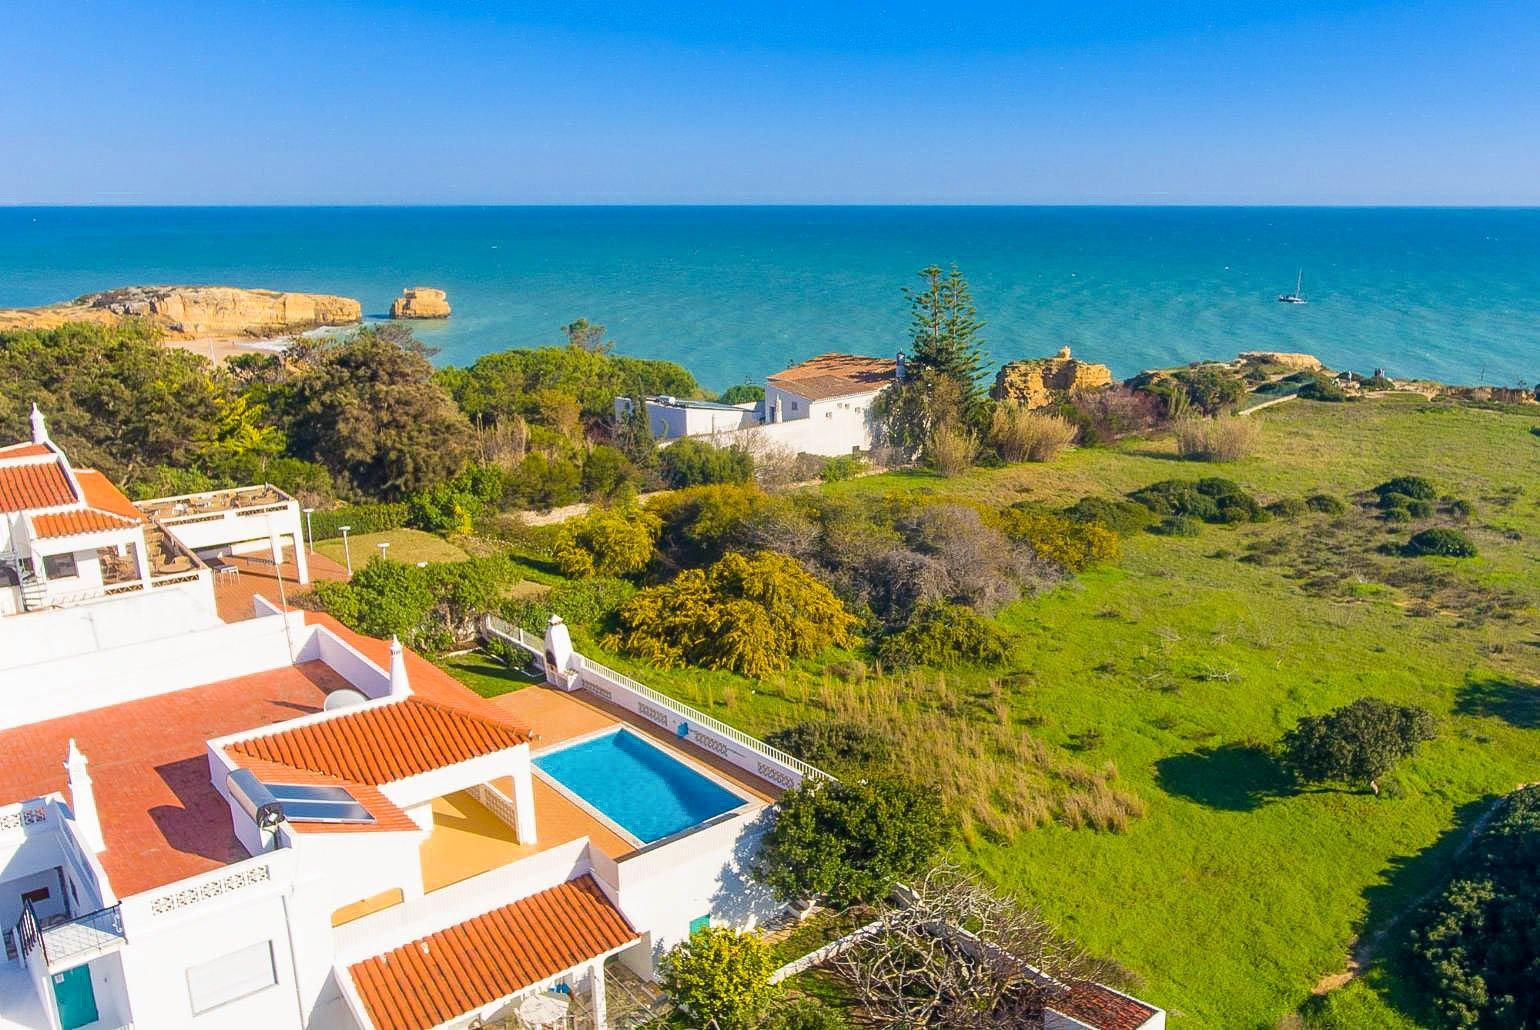 View towards Praia da Vigia from above Beach Villa Barreto